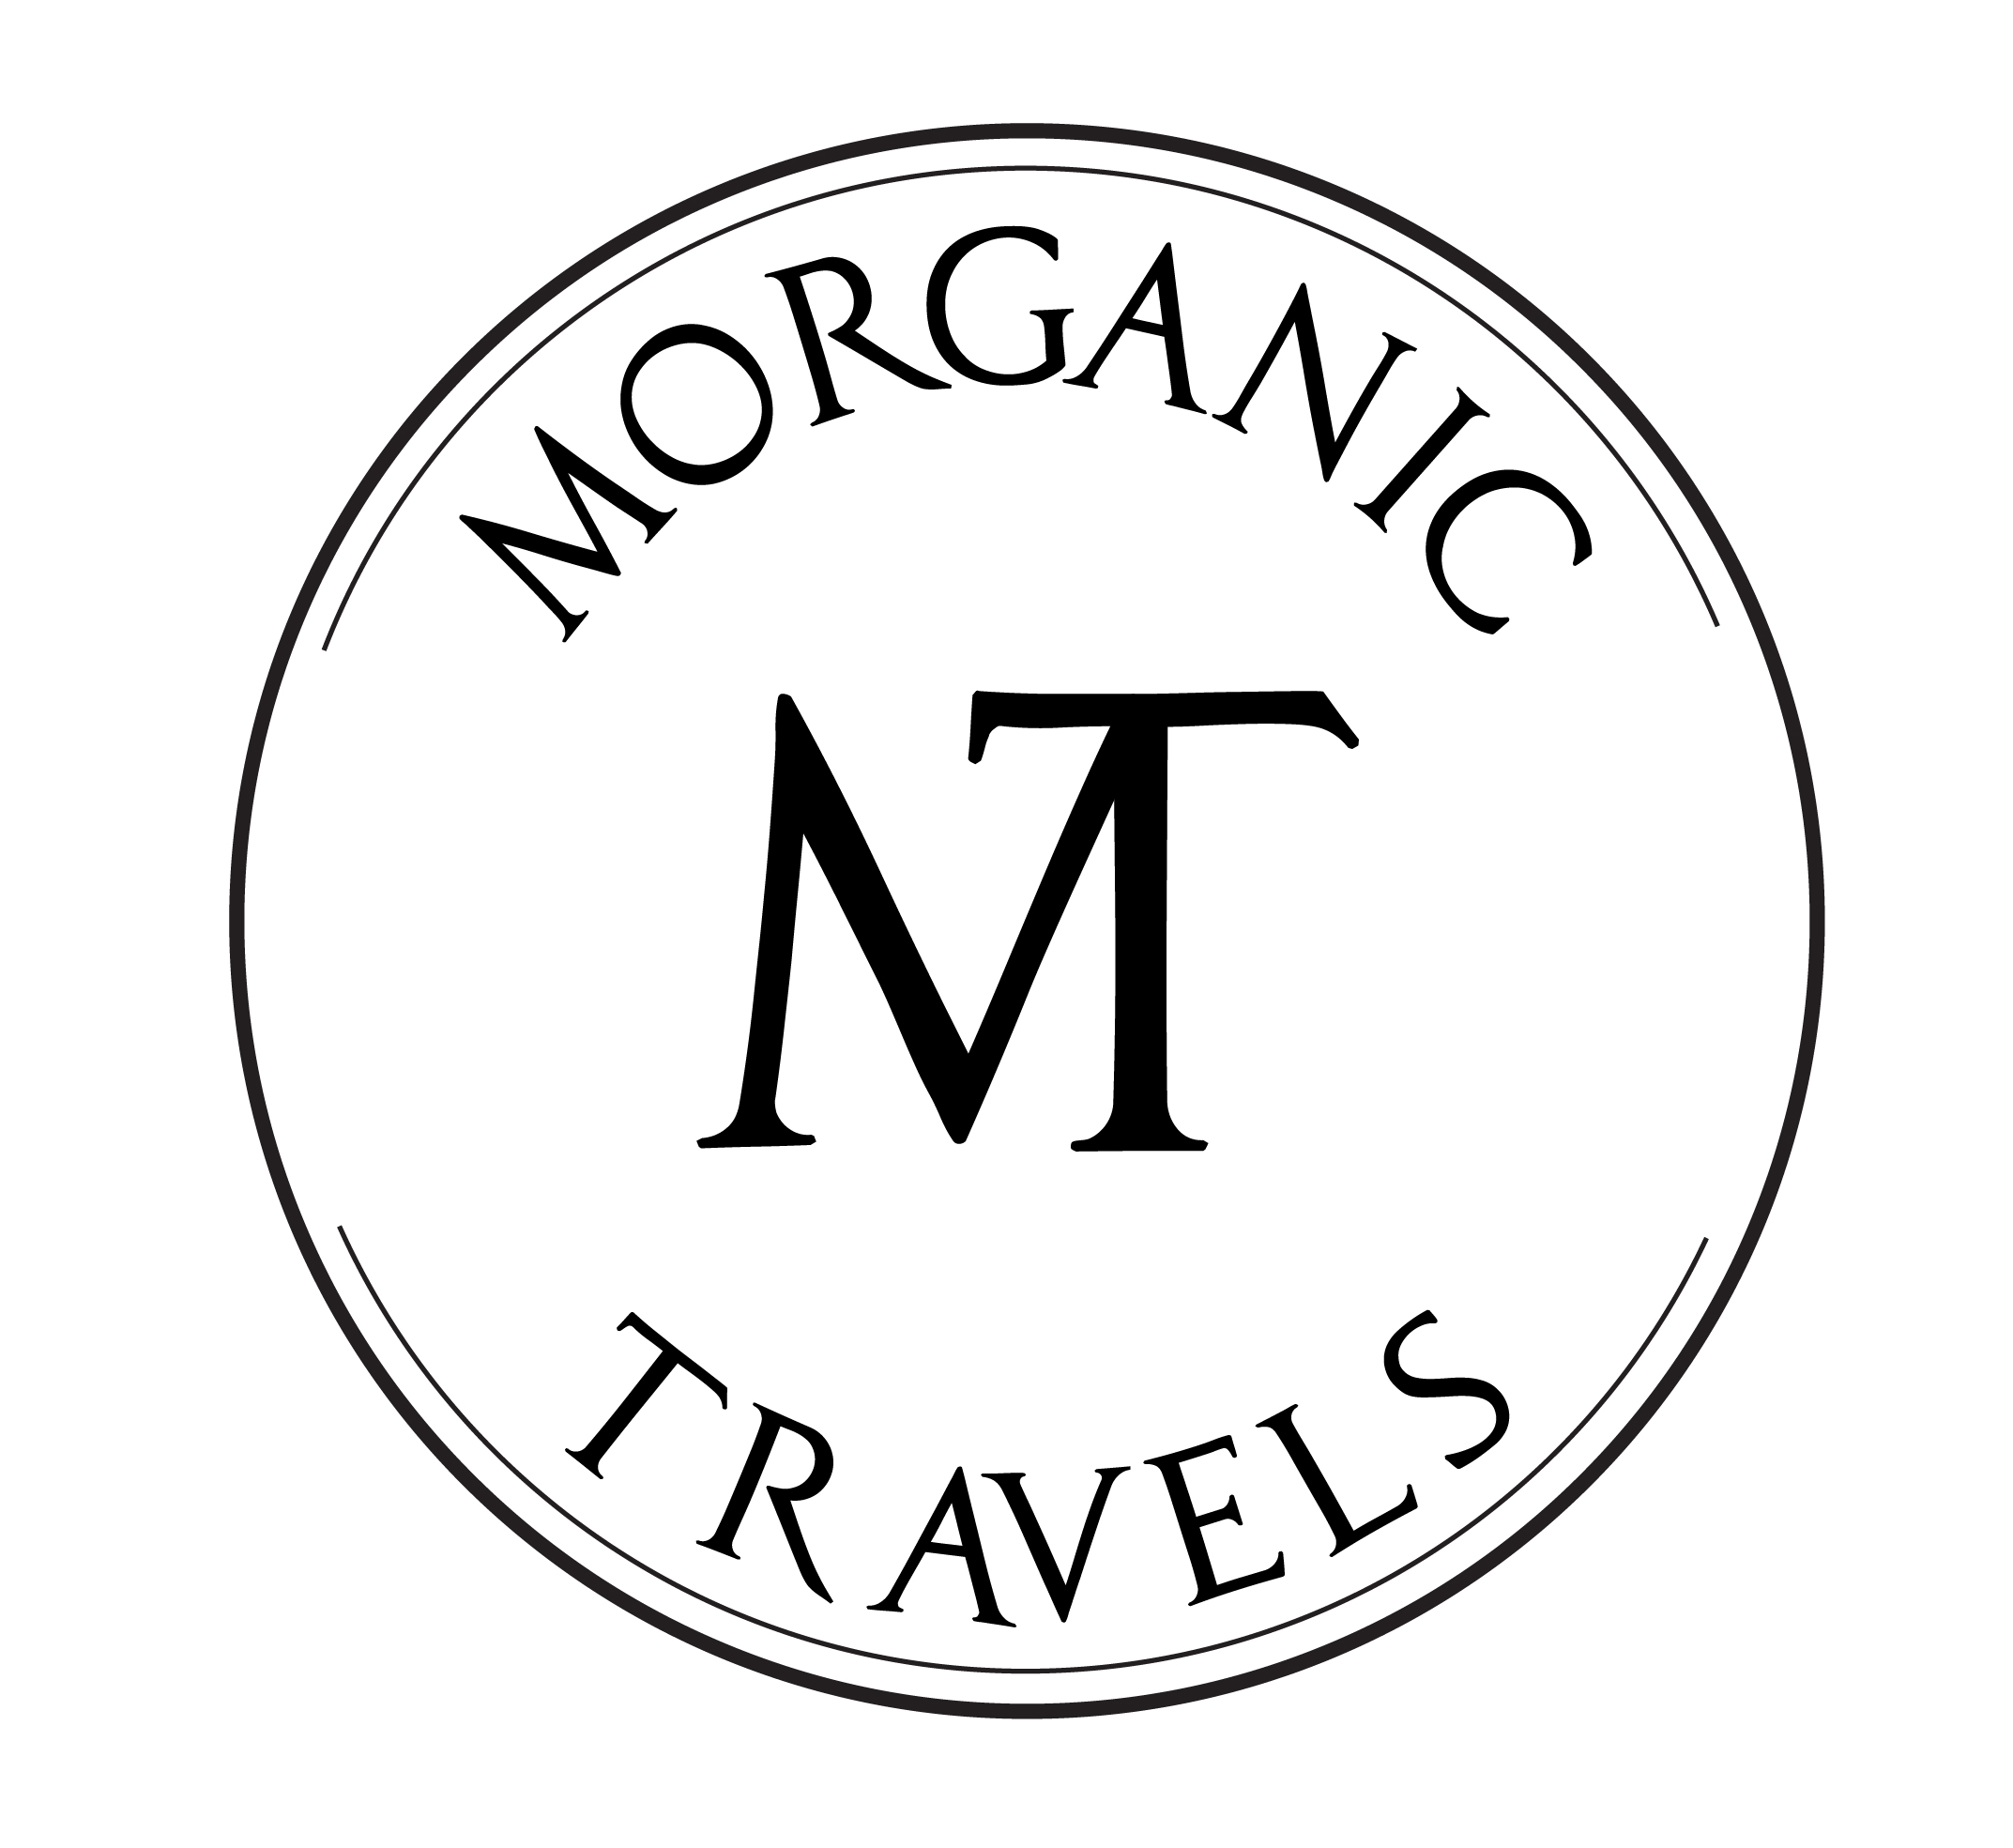 Morganic Travels